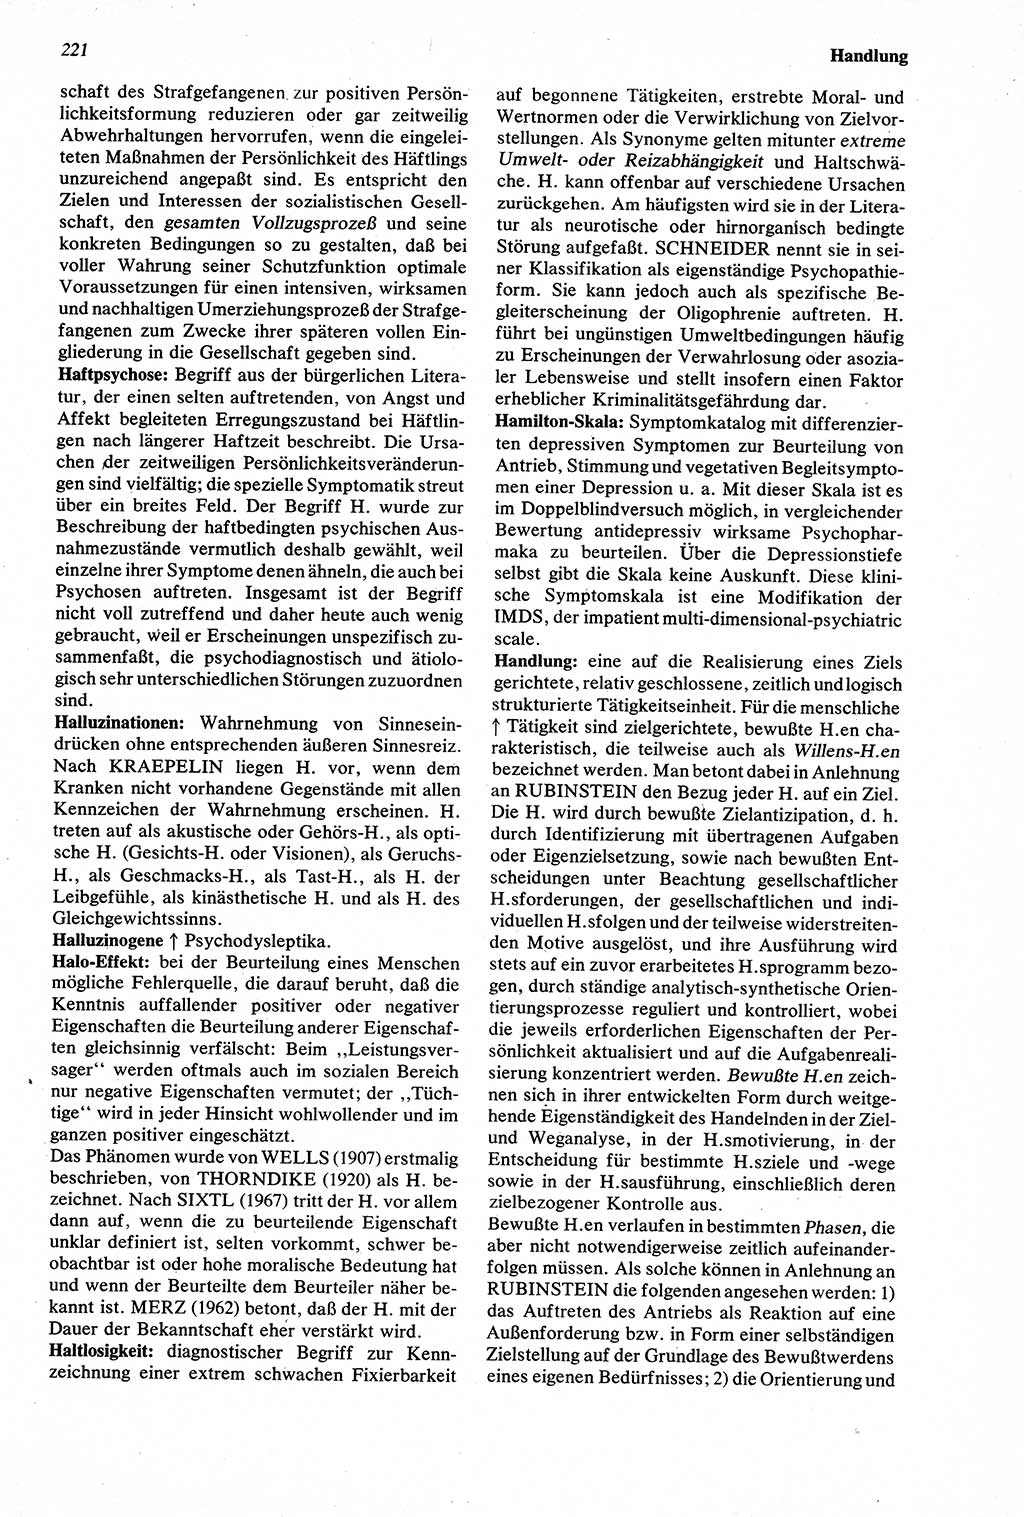 Wörterbuch der Psychologie [Deutsche Demokratische Republik (DDR)] 1976, Seite 221 (Wb. Psych. DDR 1976, S. 221)